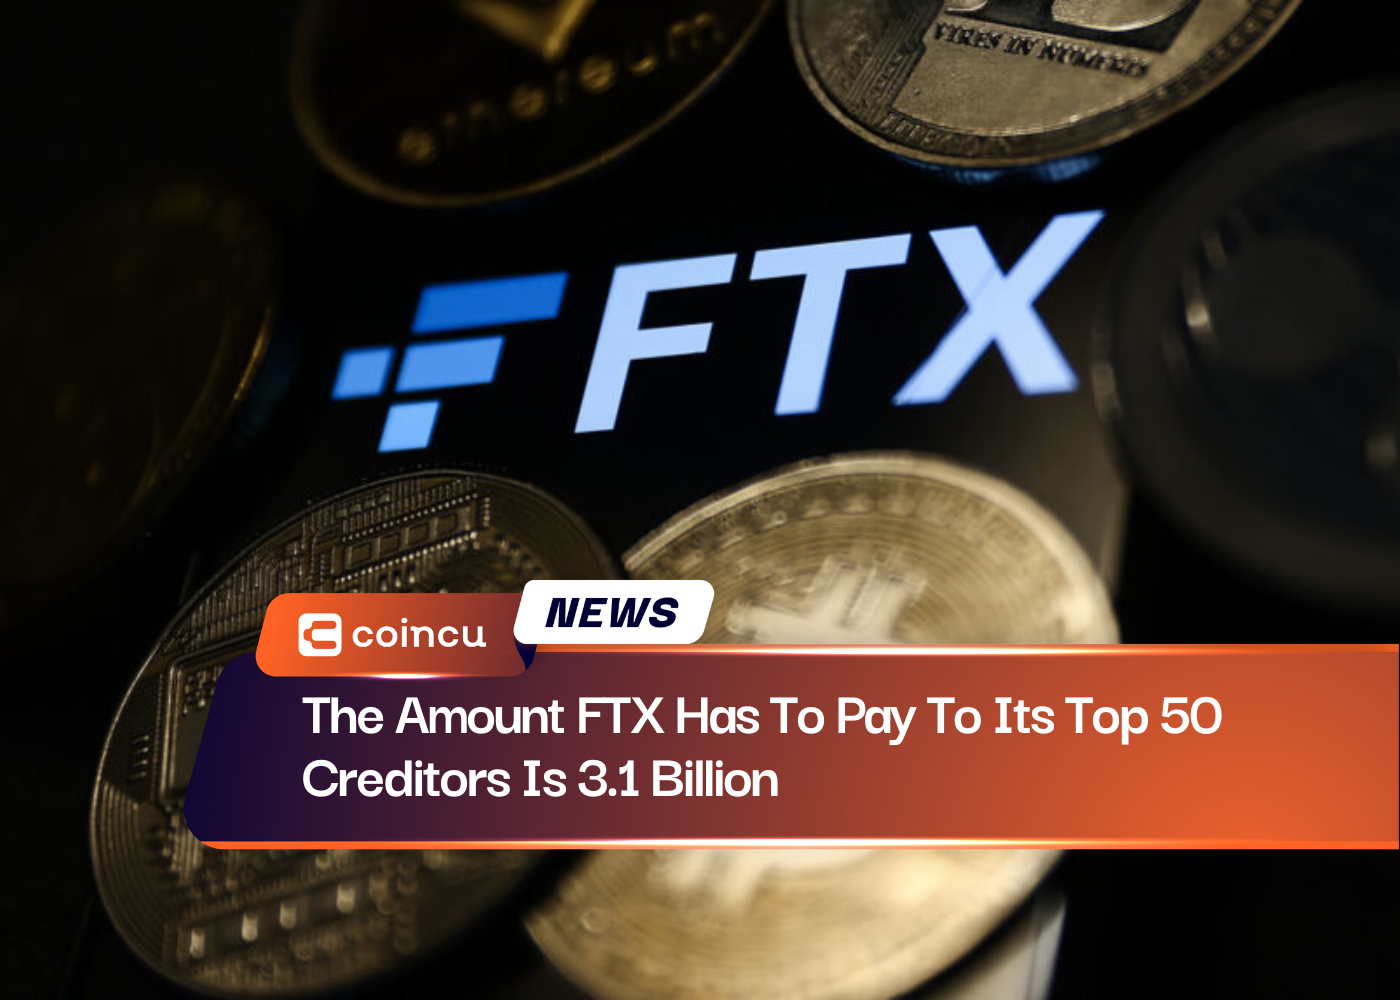 Số tiền FTX phải trả cho 50 chủ nợ hàng đầu của mình là 3.1 tỷ